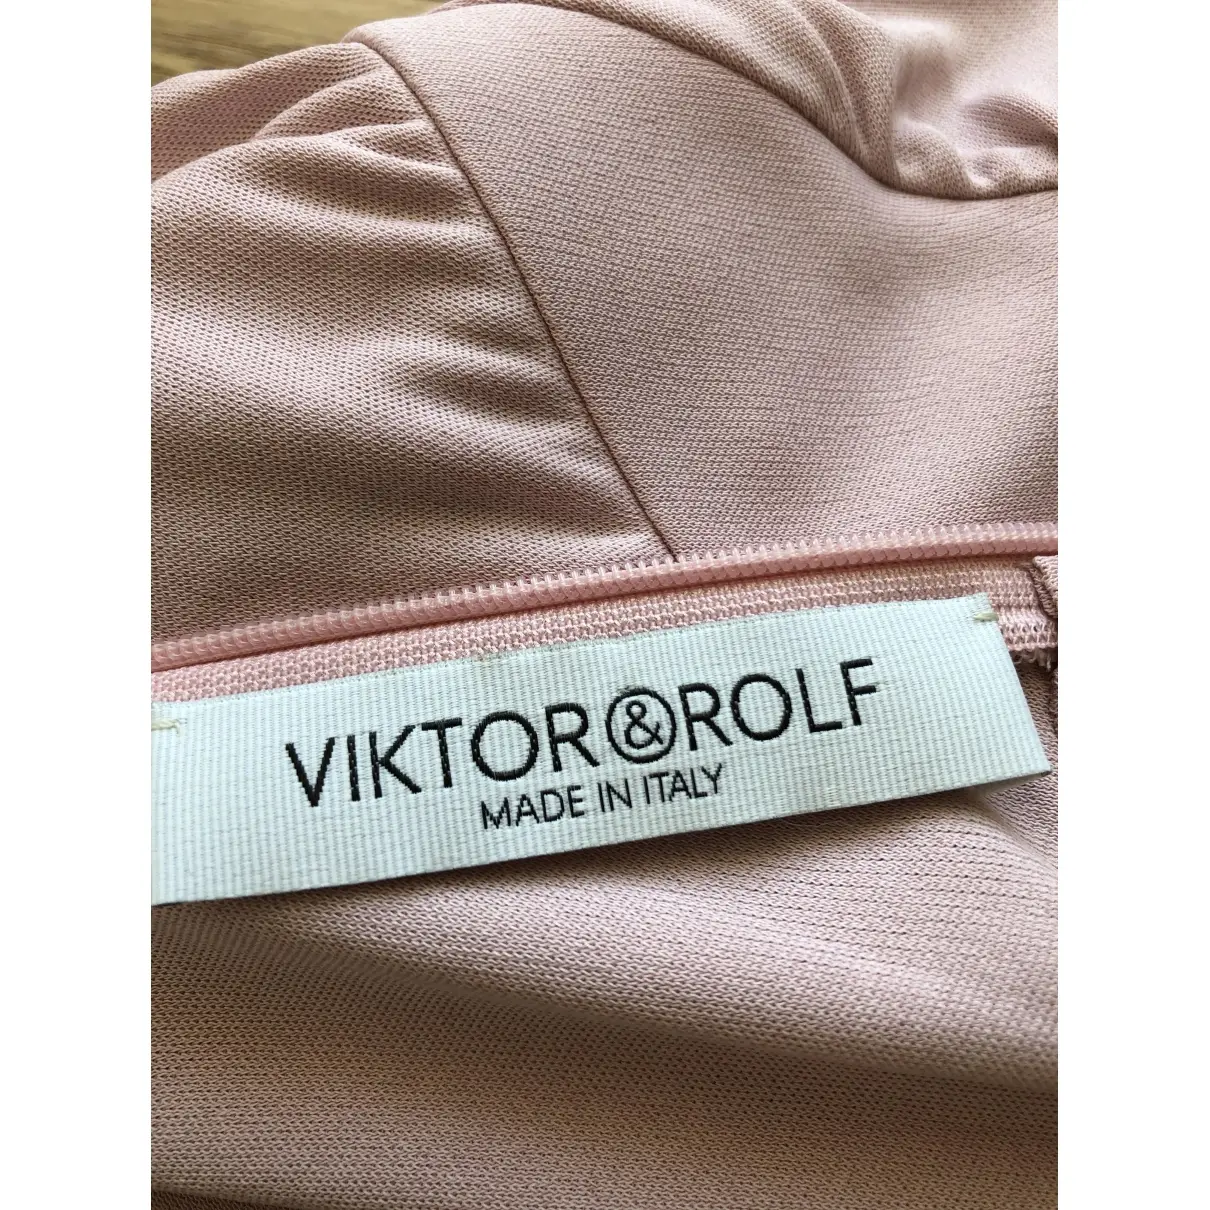 Buy Viktor & Rolf Silk blouse online